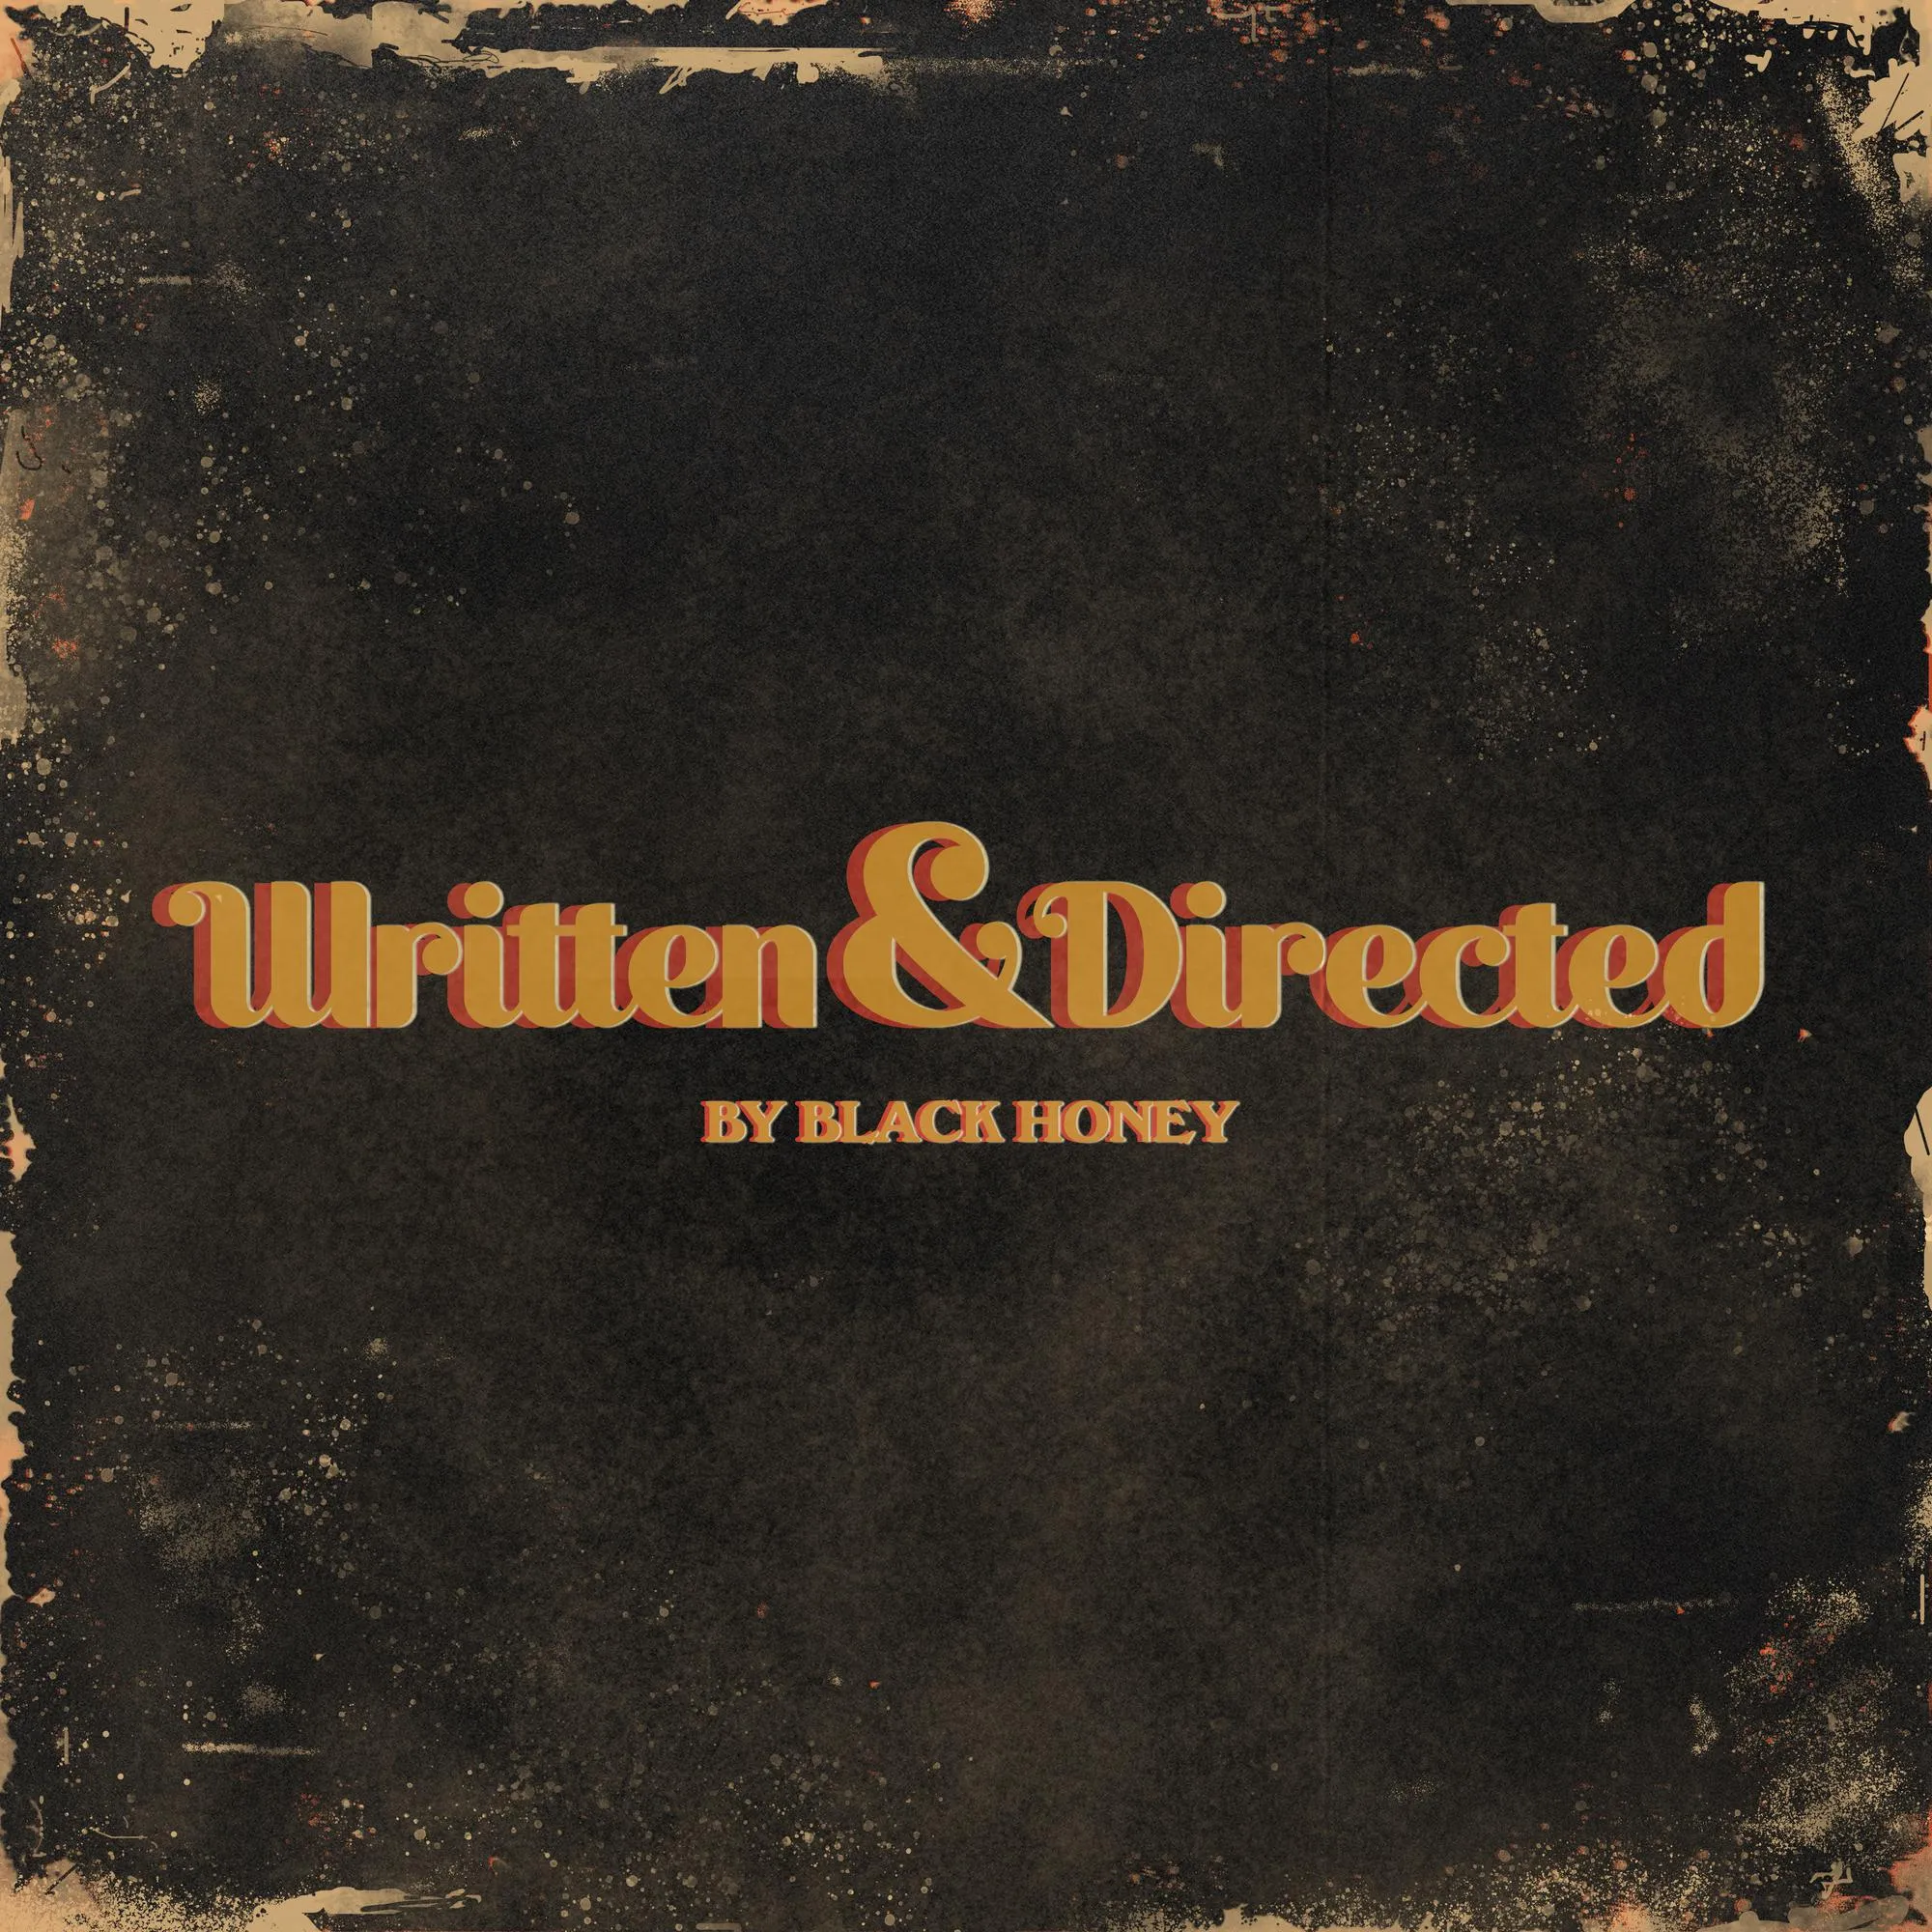 Black Honey - Written and Directed artwork